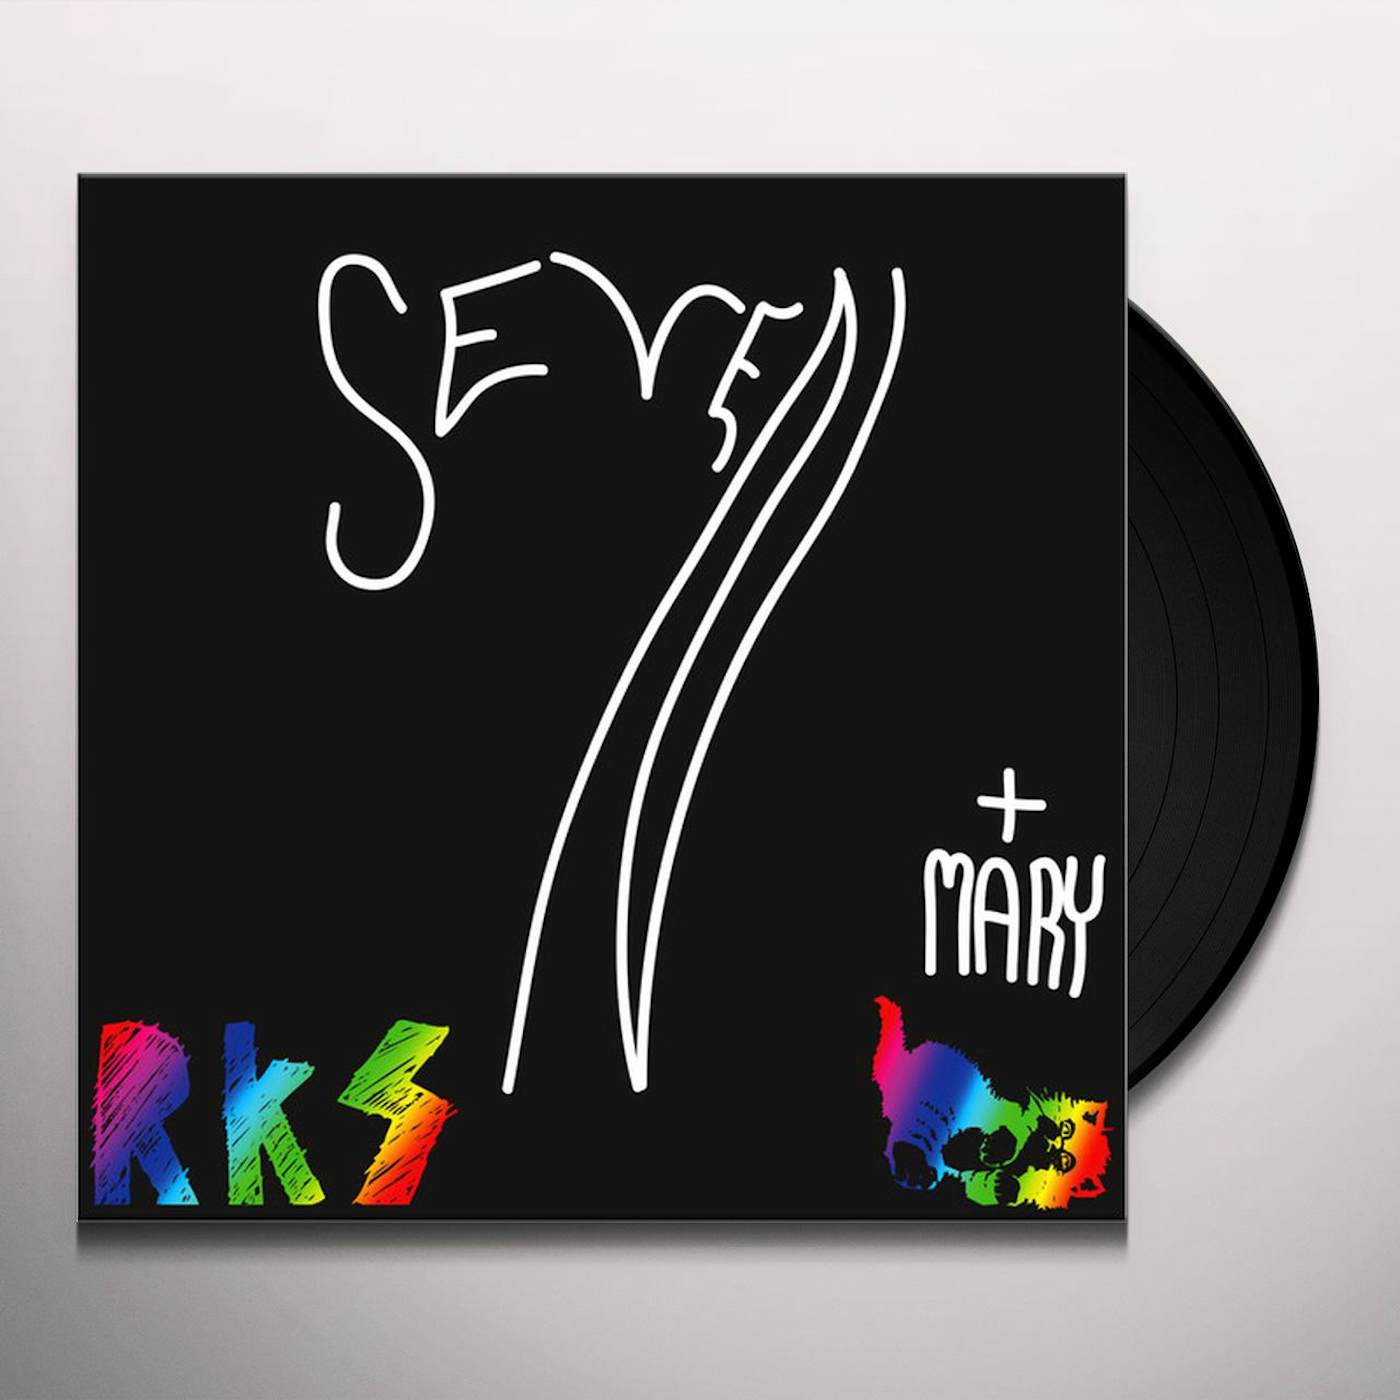 Rainbow Kitten Surprise Seven + Mary Vinyl Record